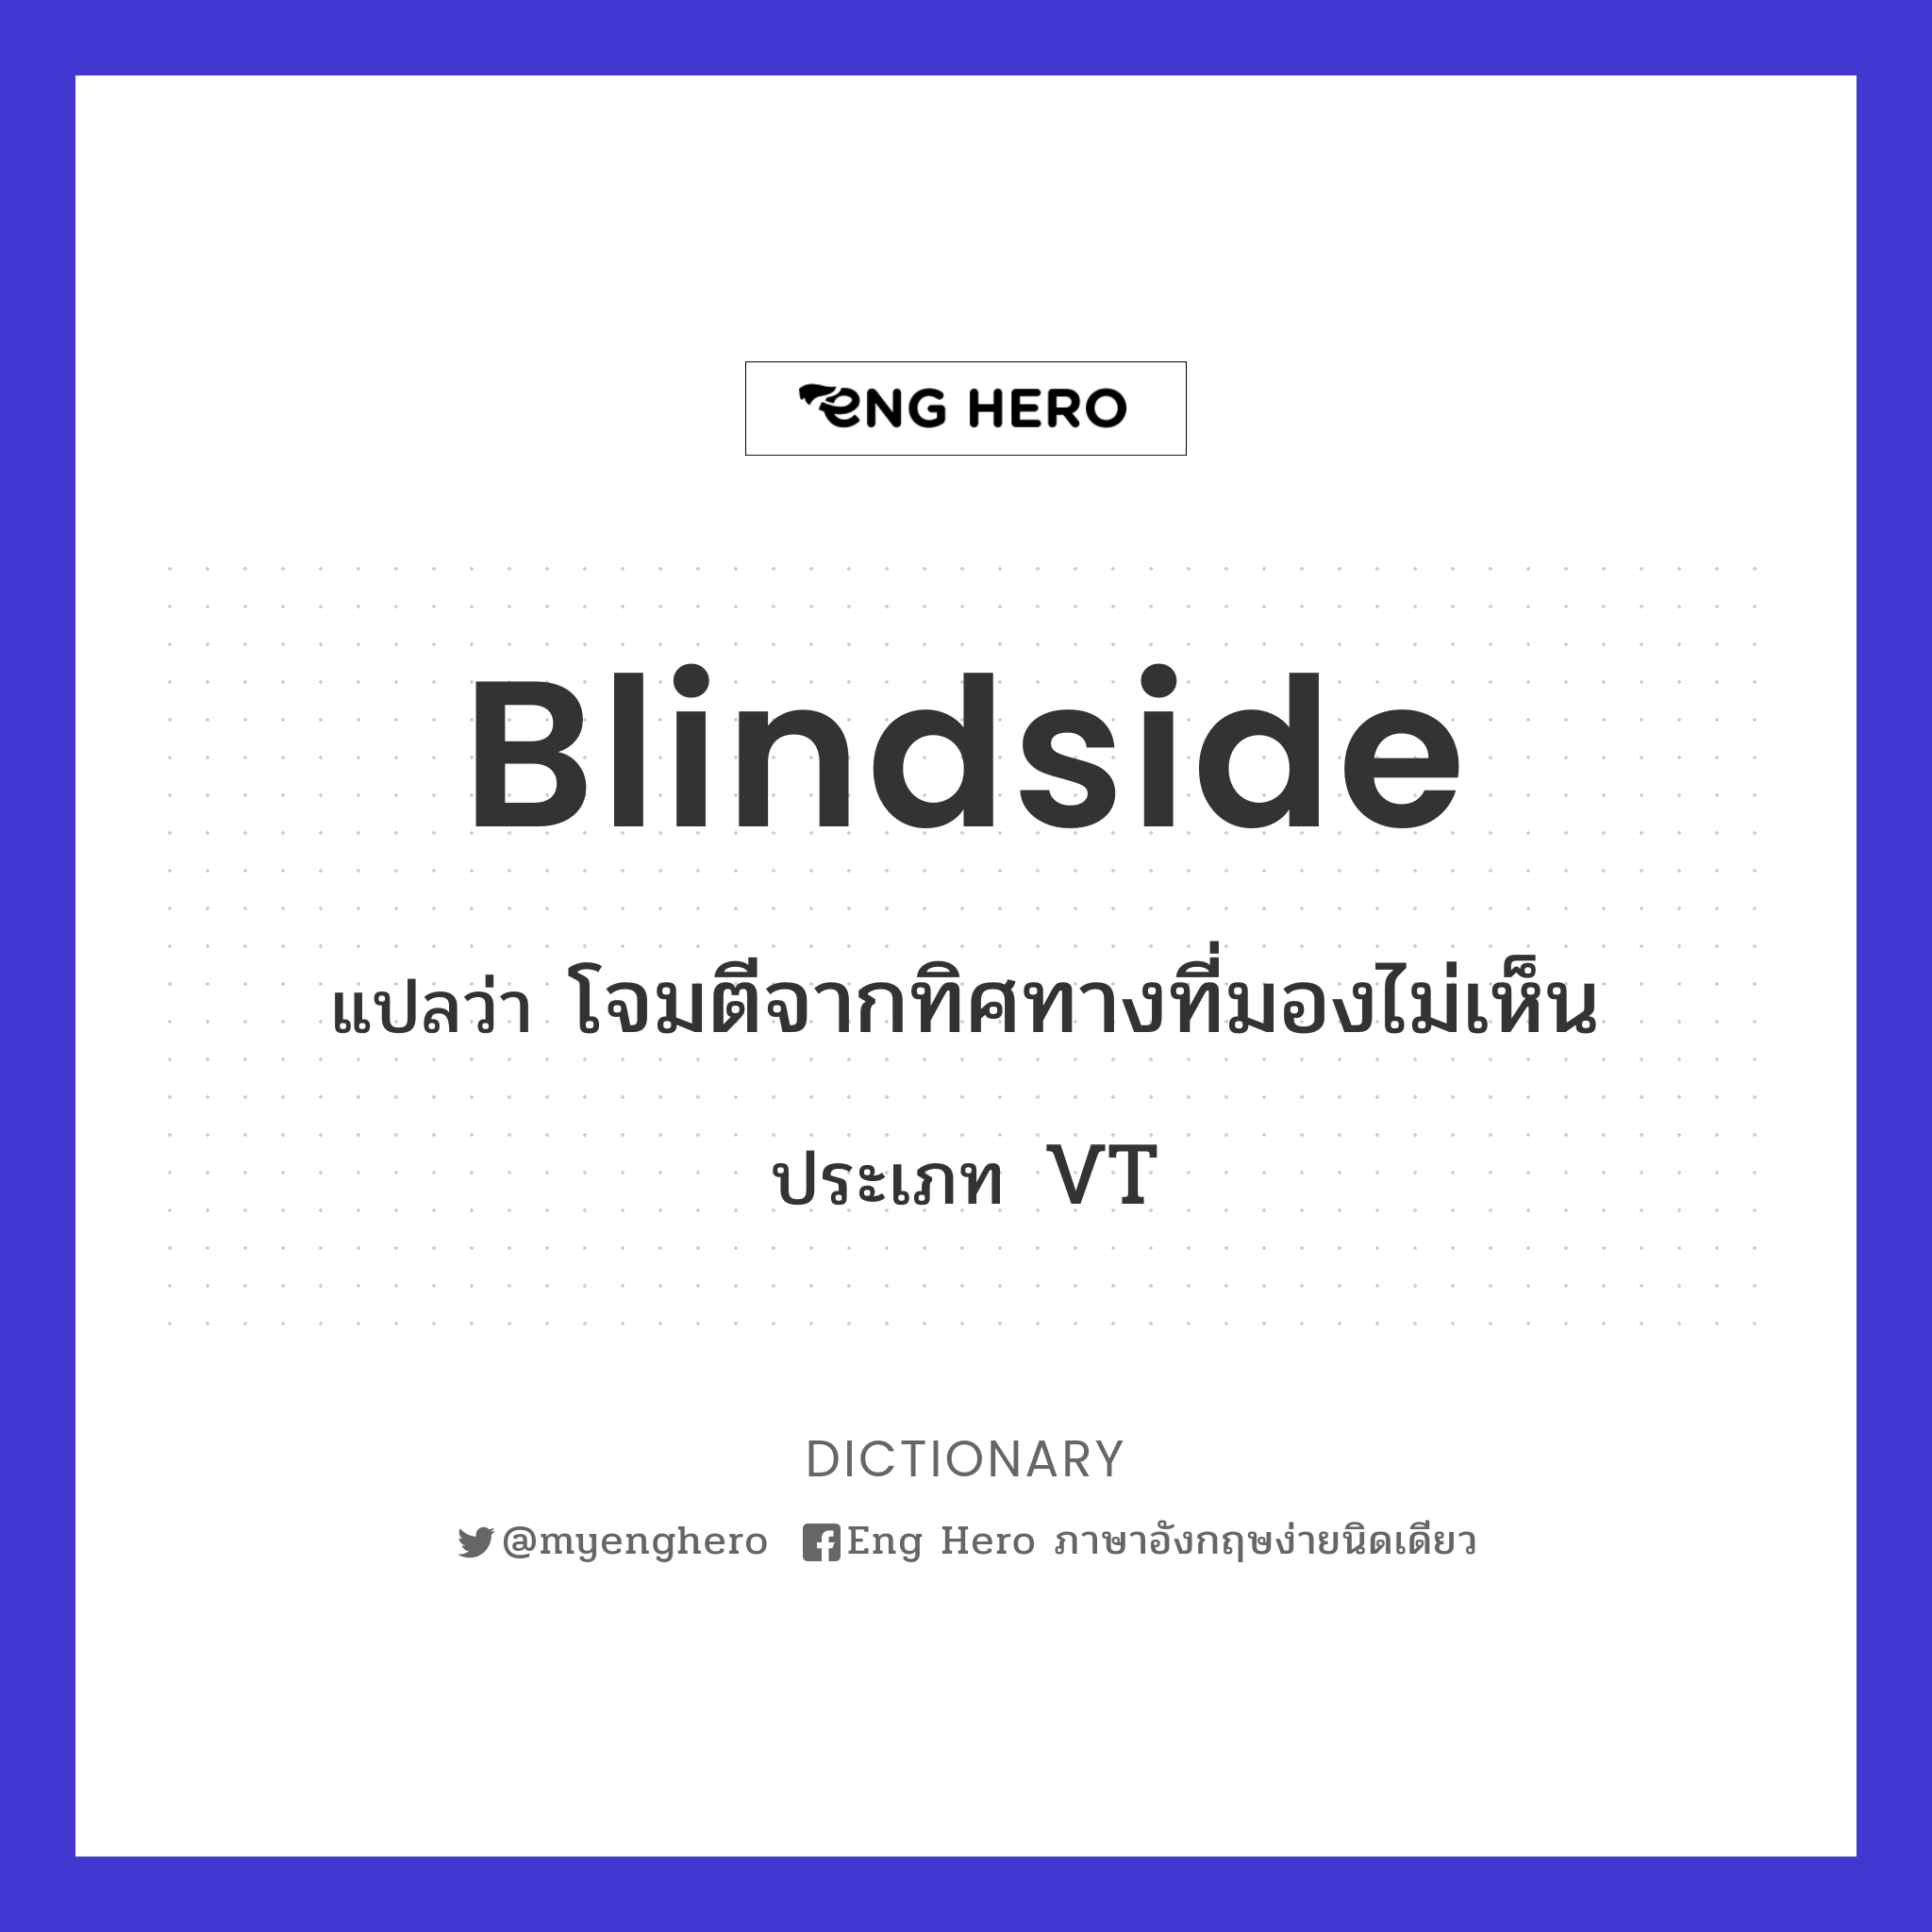 blindside